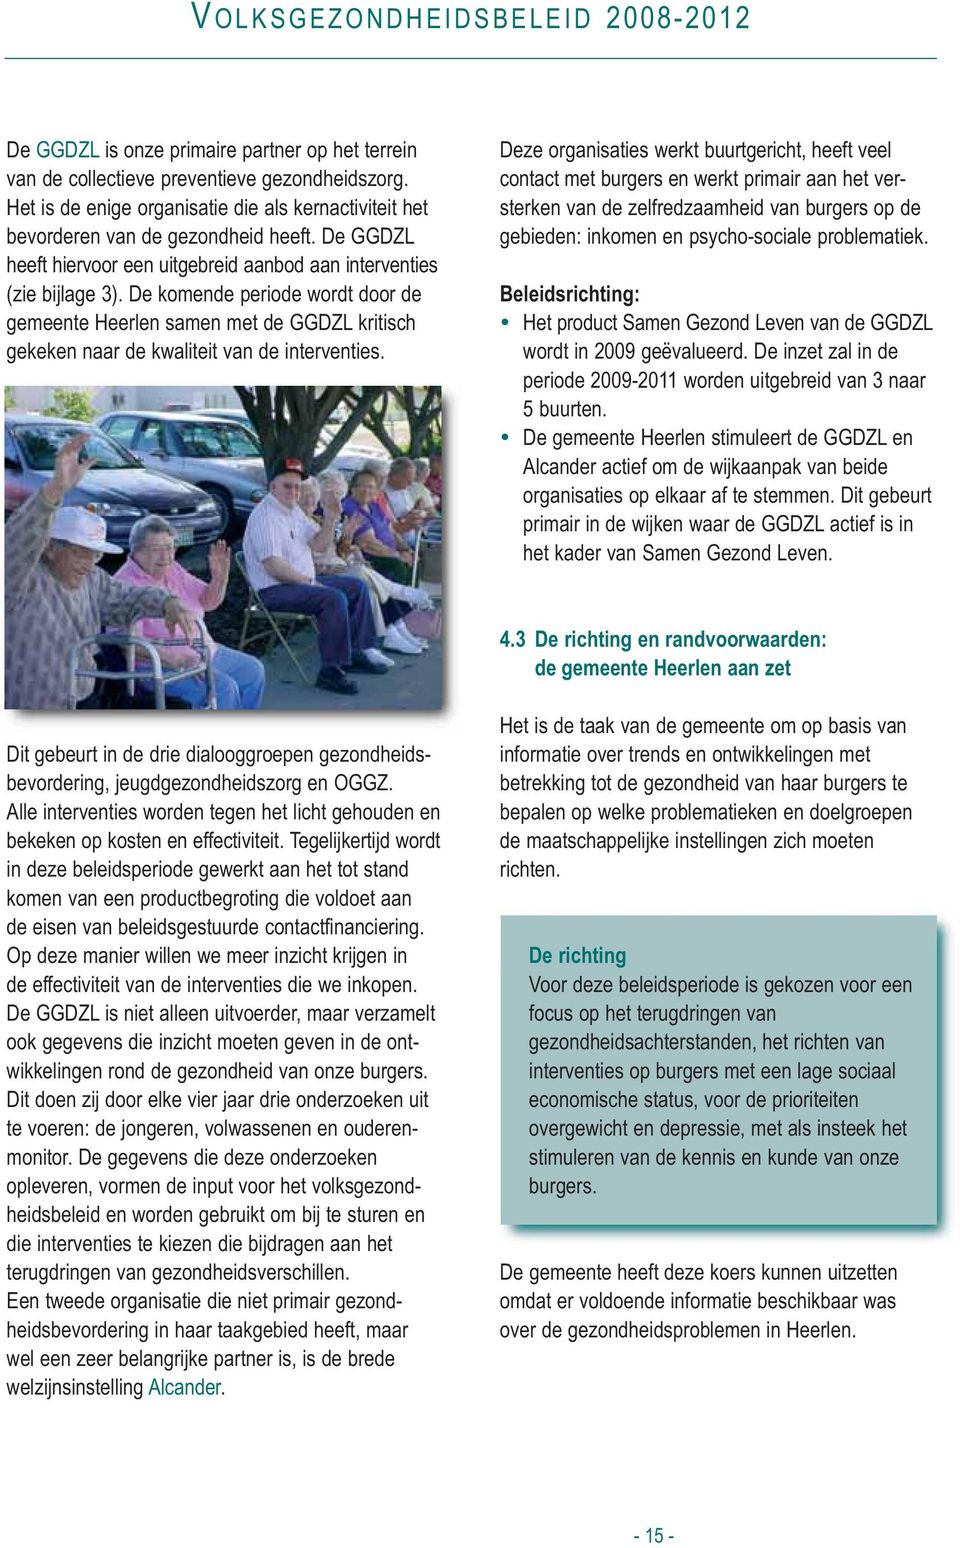 De komende periode wordt door de gemeente Heerlen samen met de GGDZL kritisch gekeken naar de kwaliteit van de interventies.